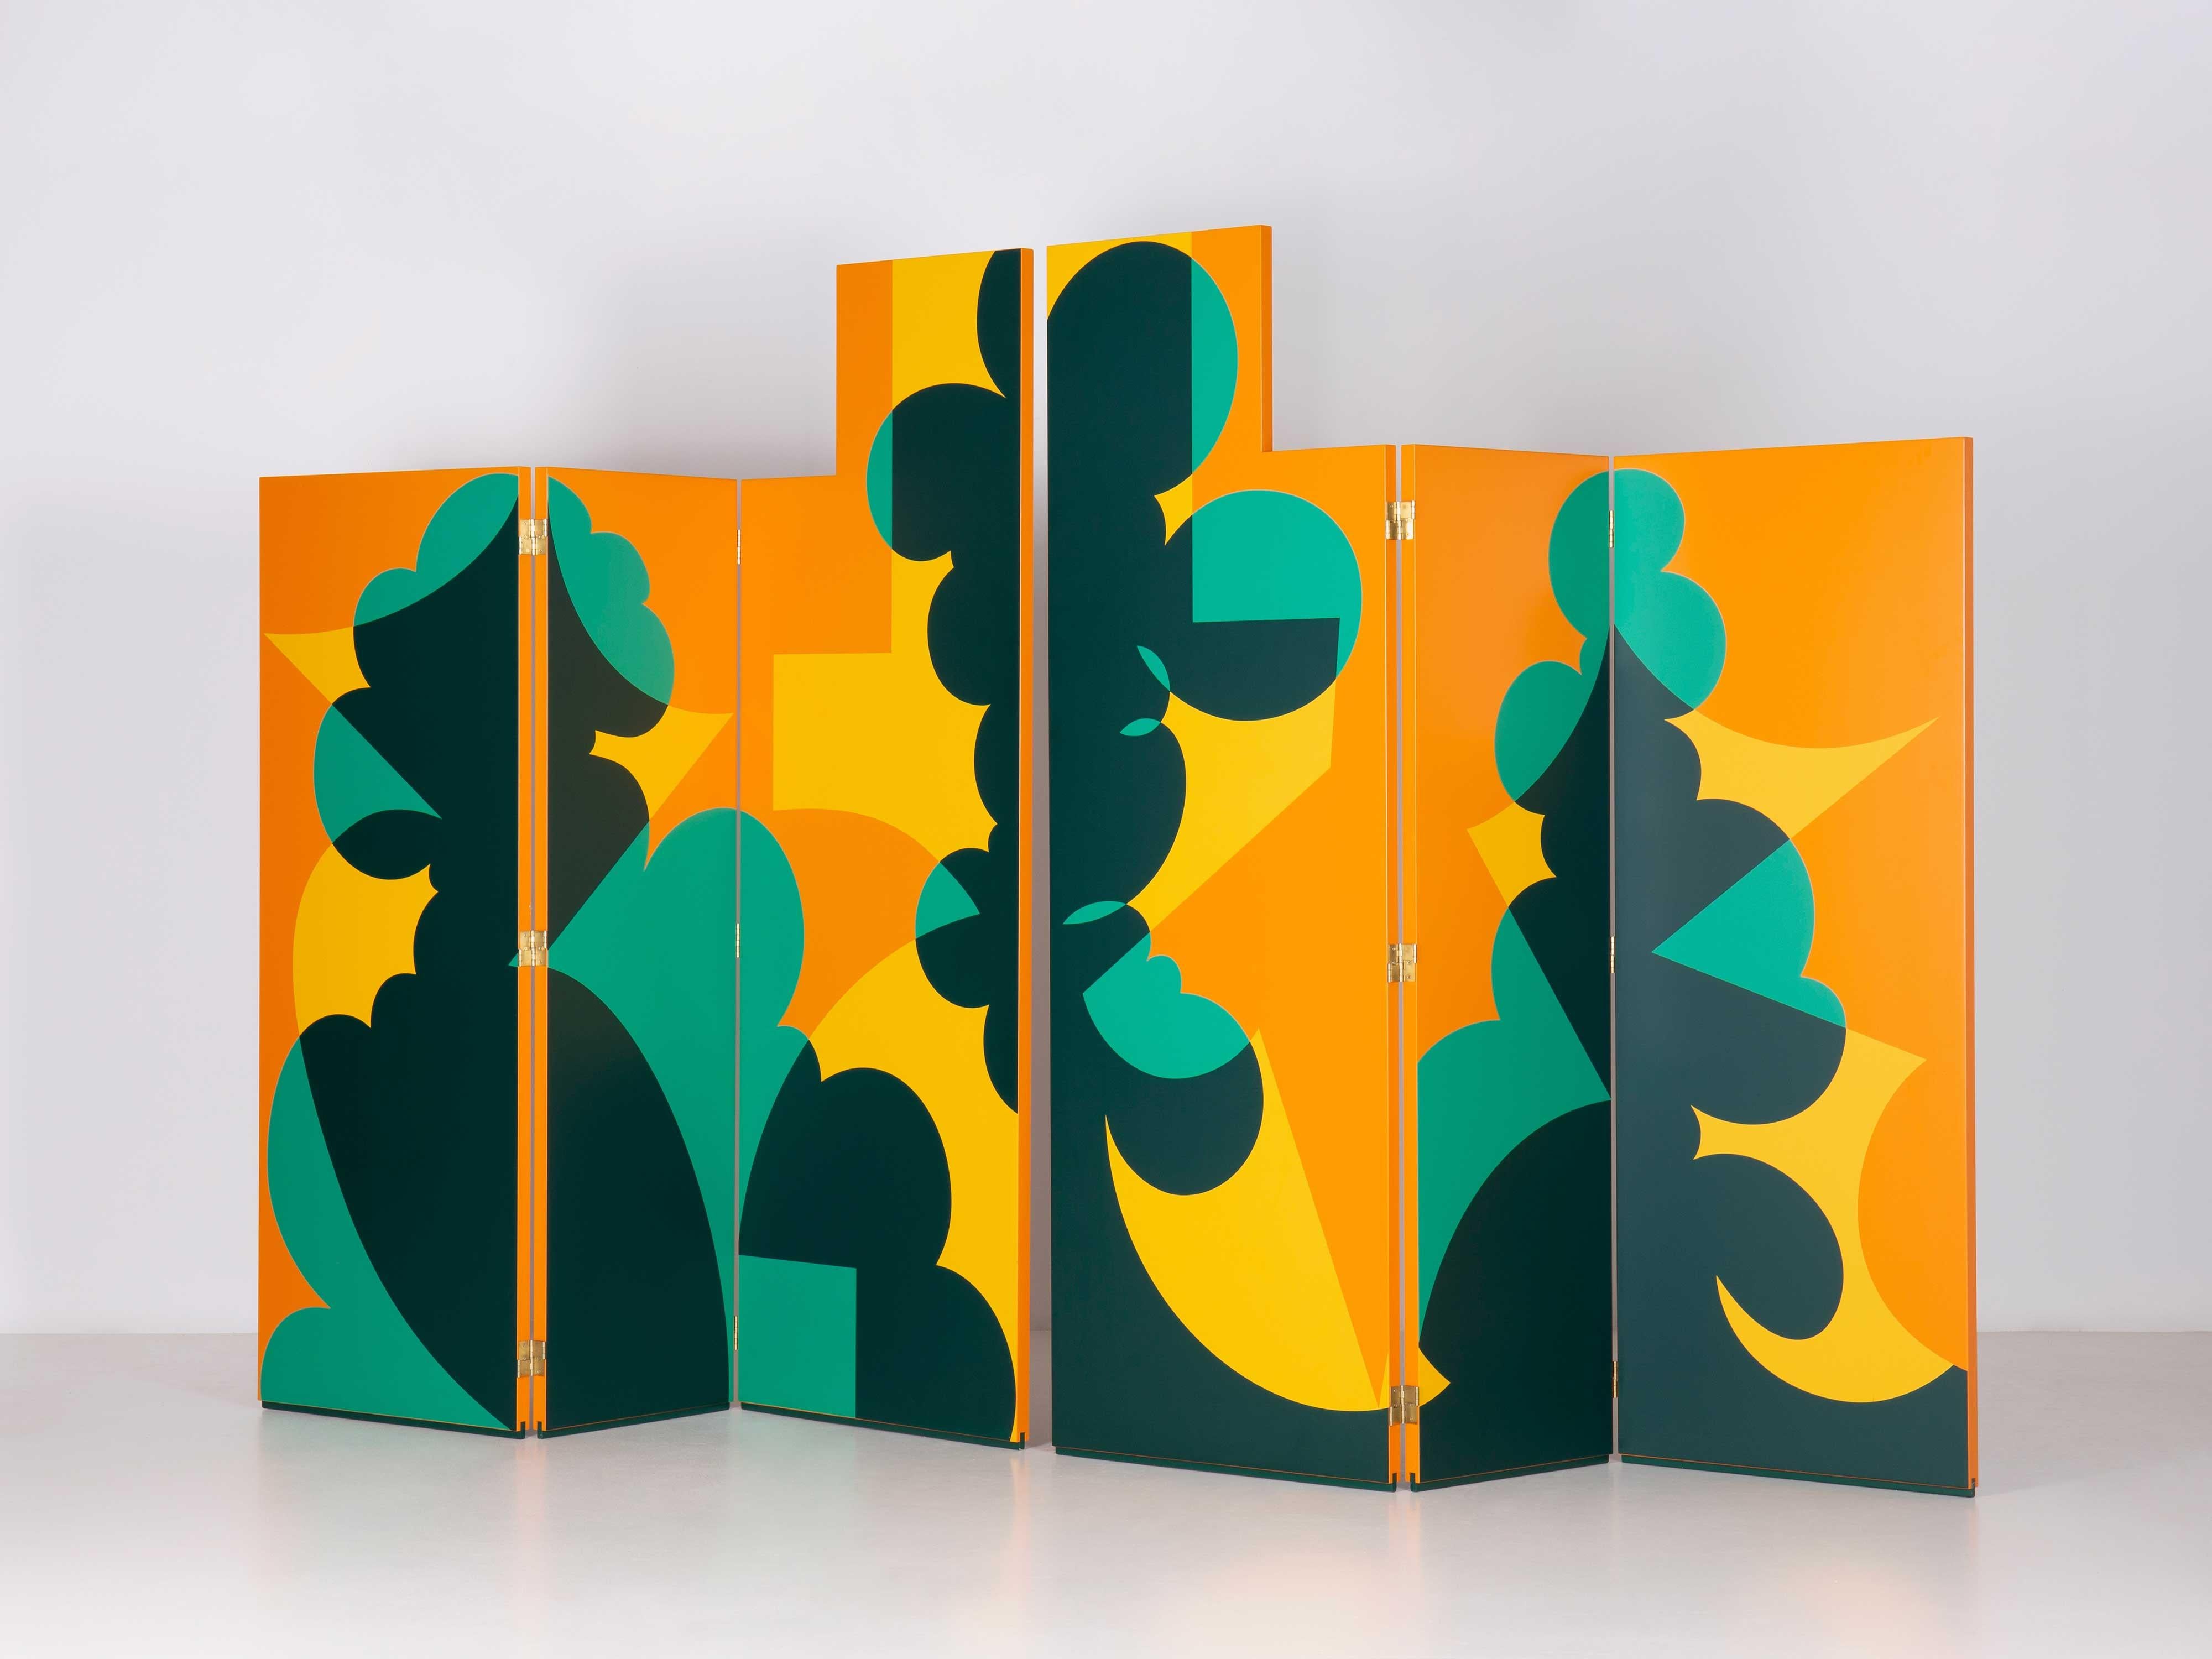 Faltbarer Bildschirm nach einem Entwurf von Giacomo Balla aus den Jahren 1916-18. Mehrschichtige Holzstruktur. Das Set besteht aus zwei Teilen mit jeweils drei Tafeln, die mit Klappscharnieren verbunden sind. Siebdruckdekoration (gelb, grün, orange)